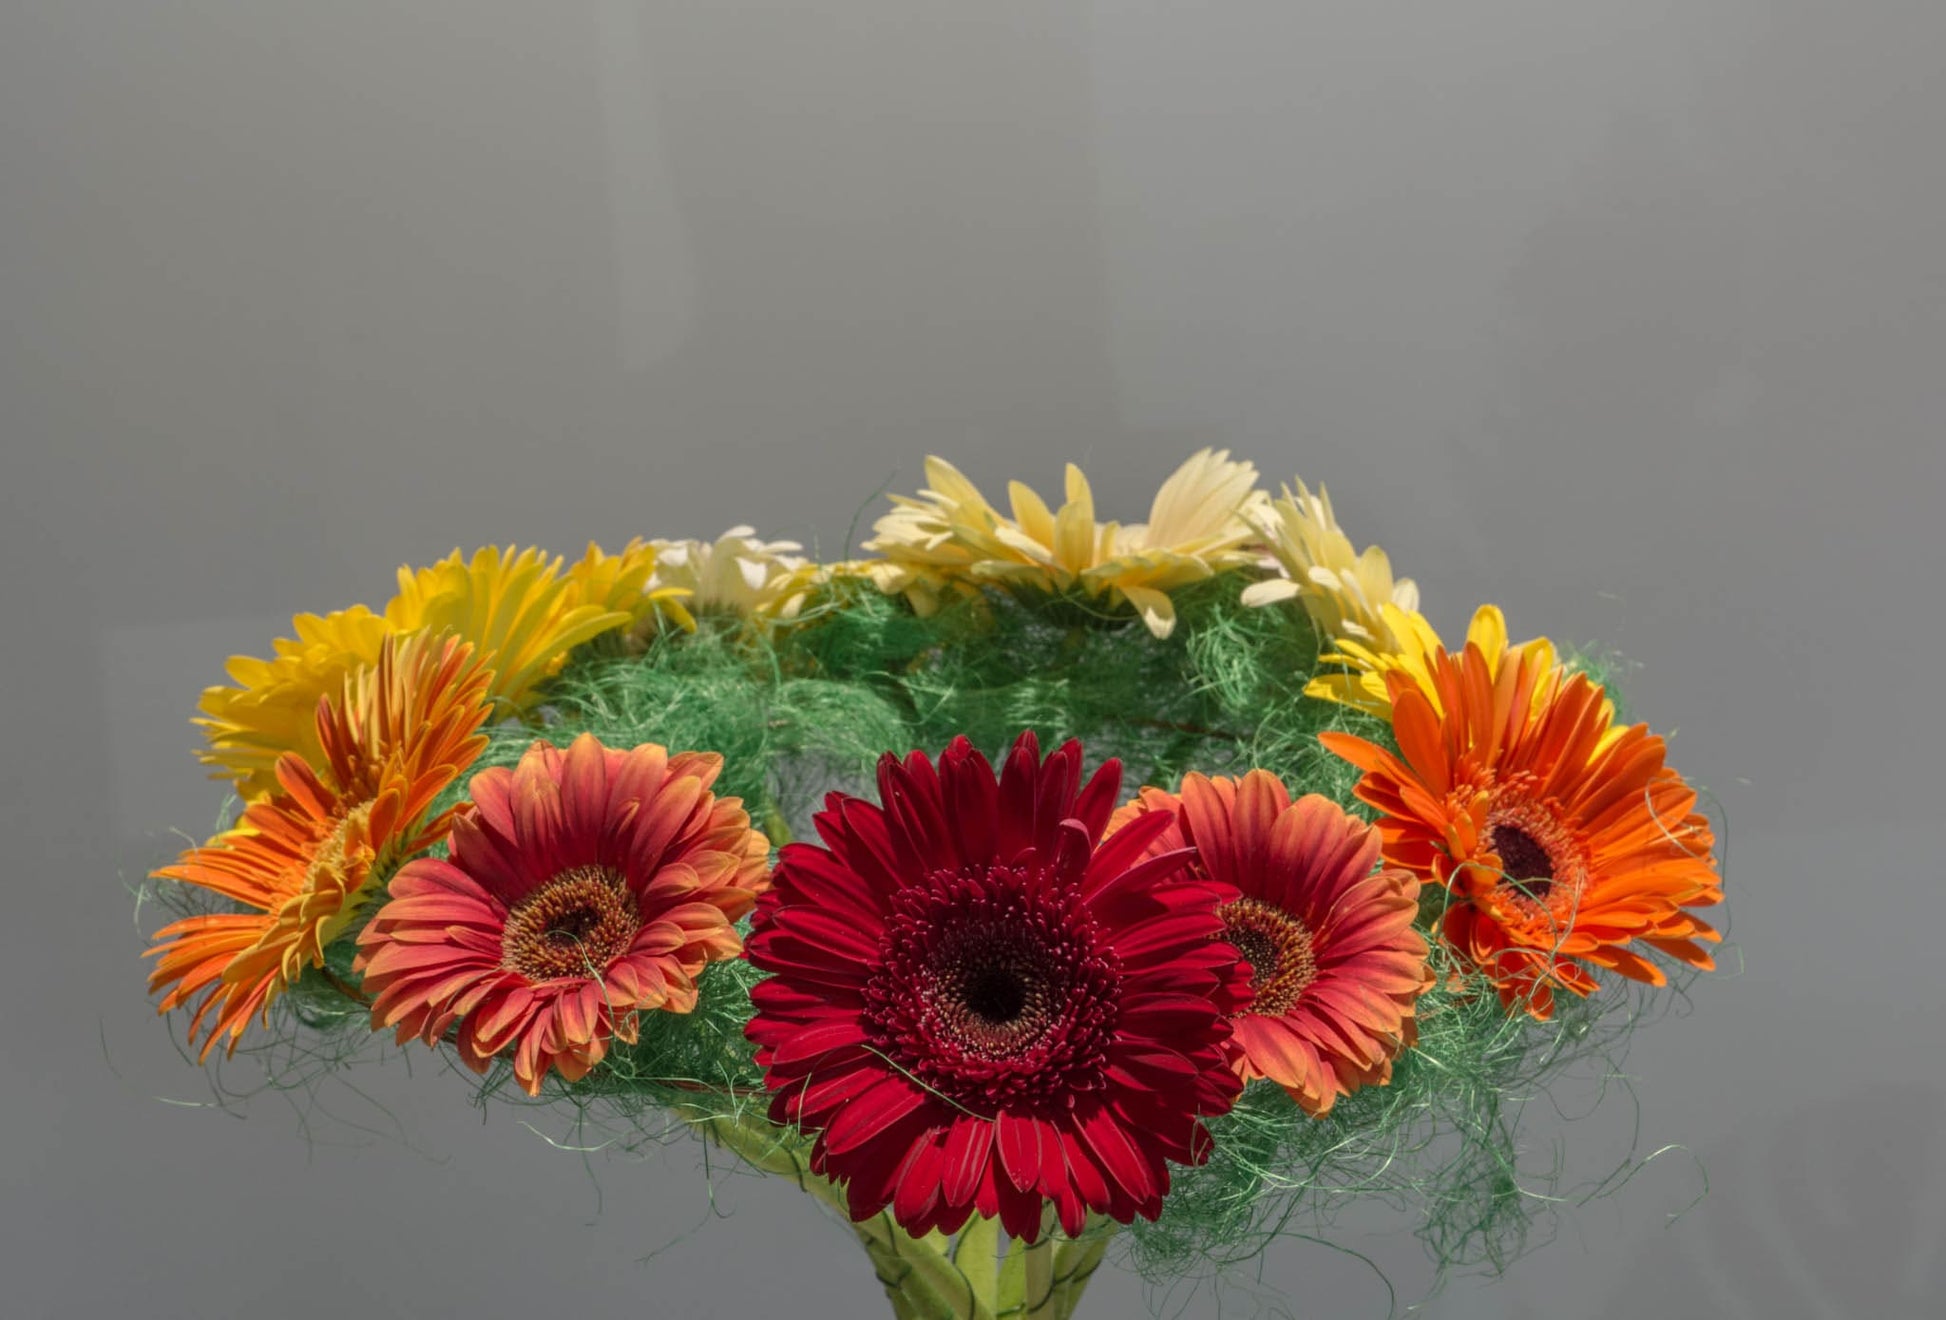 O imagine cuprinzătoare a buchetului nostru echilibrat, reprezentând frumusețea și variabilitatea florilor gerbera